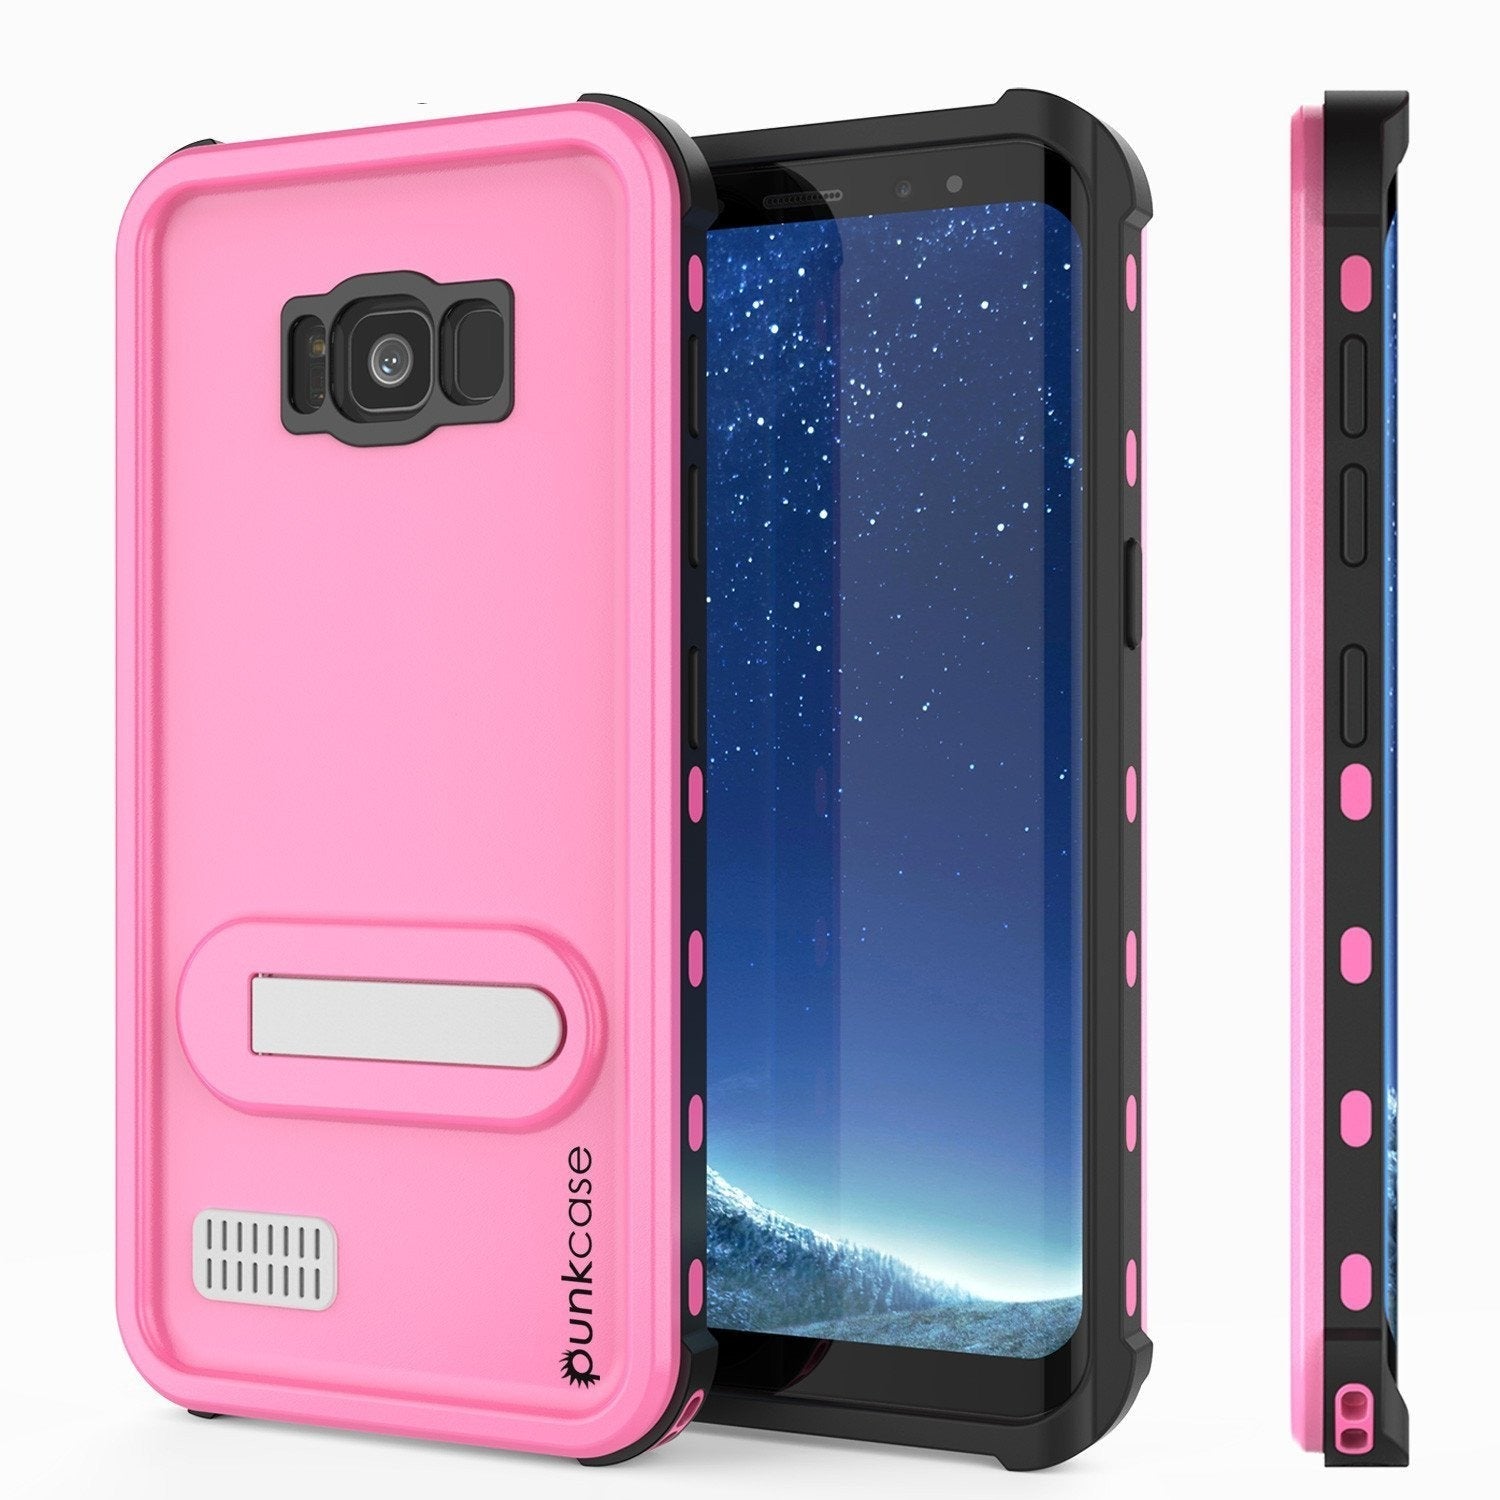 Protector [PURPLE]Galaxy S8 Waterproof Case, Punkcase [KickStud Series] [Slim Fit] [IP68 Certified] [Shockproof] [Snowproof] Armor Cover [Pink] (Color in image: Pink)